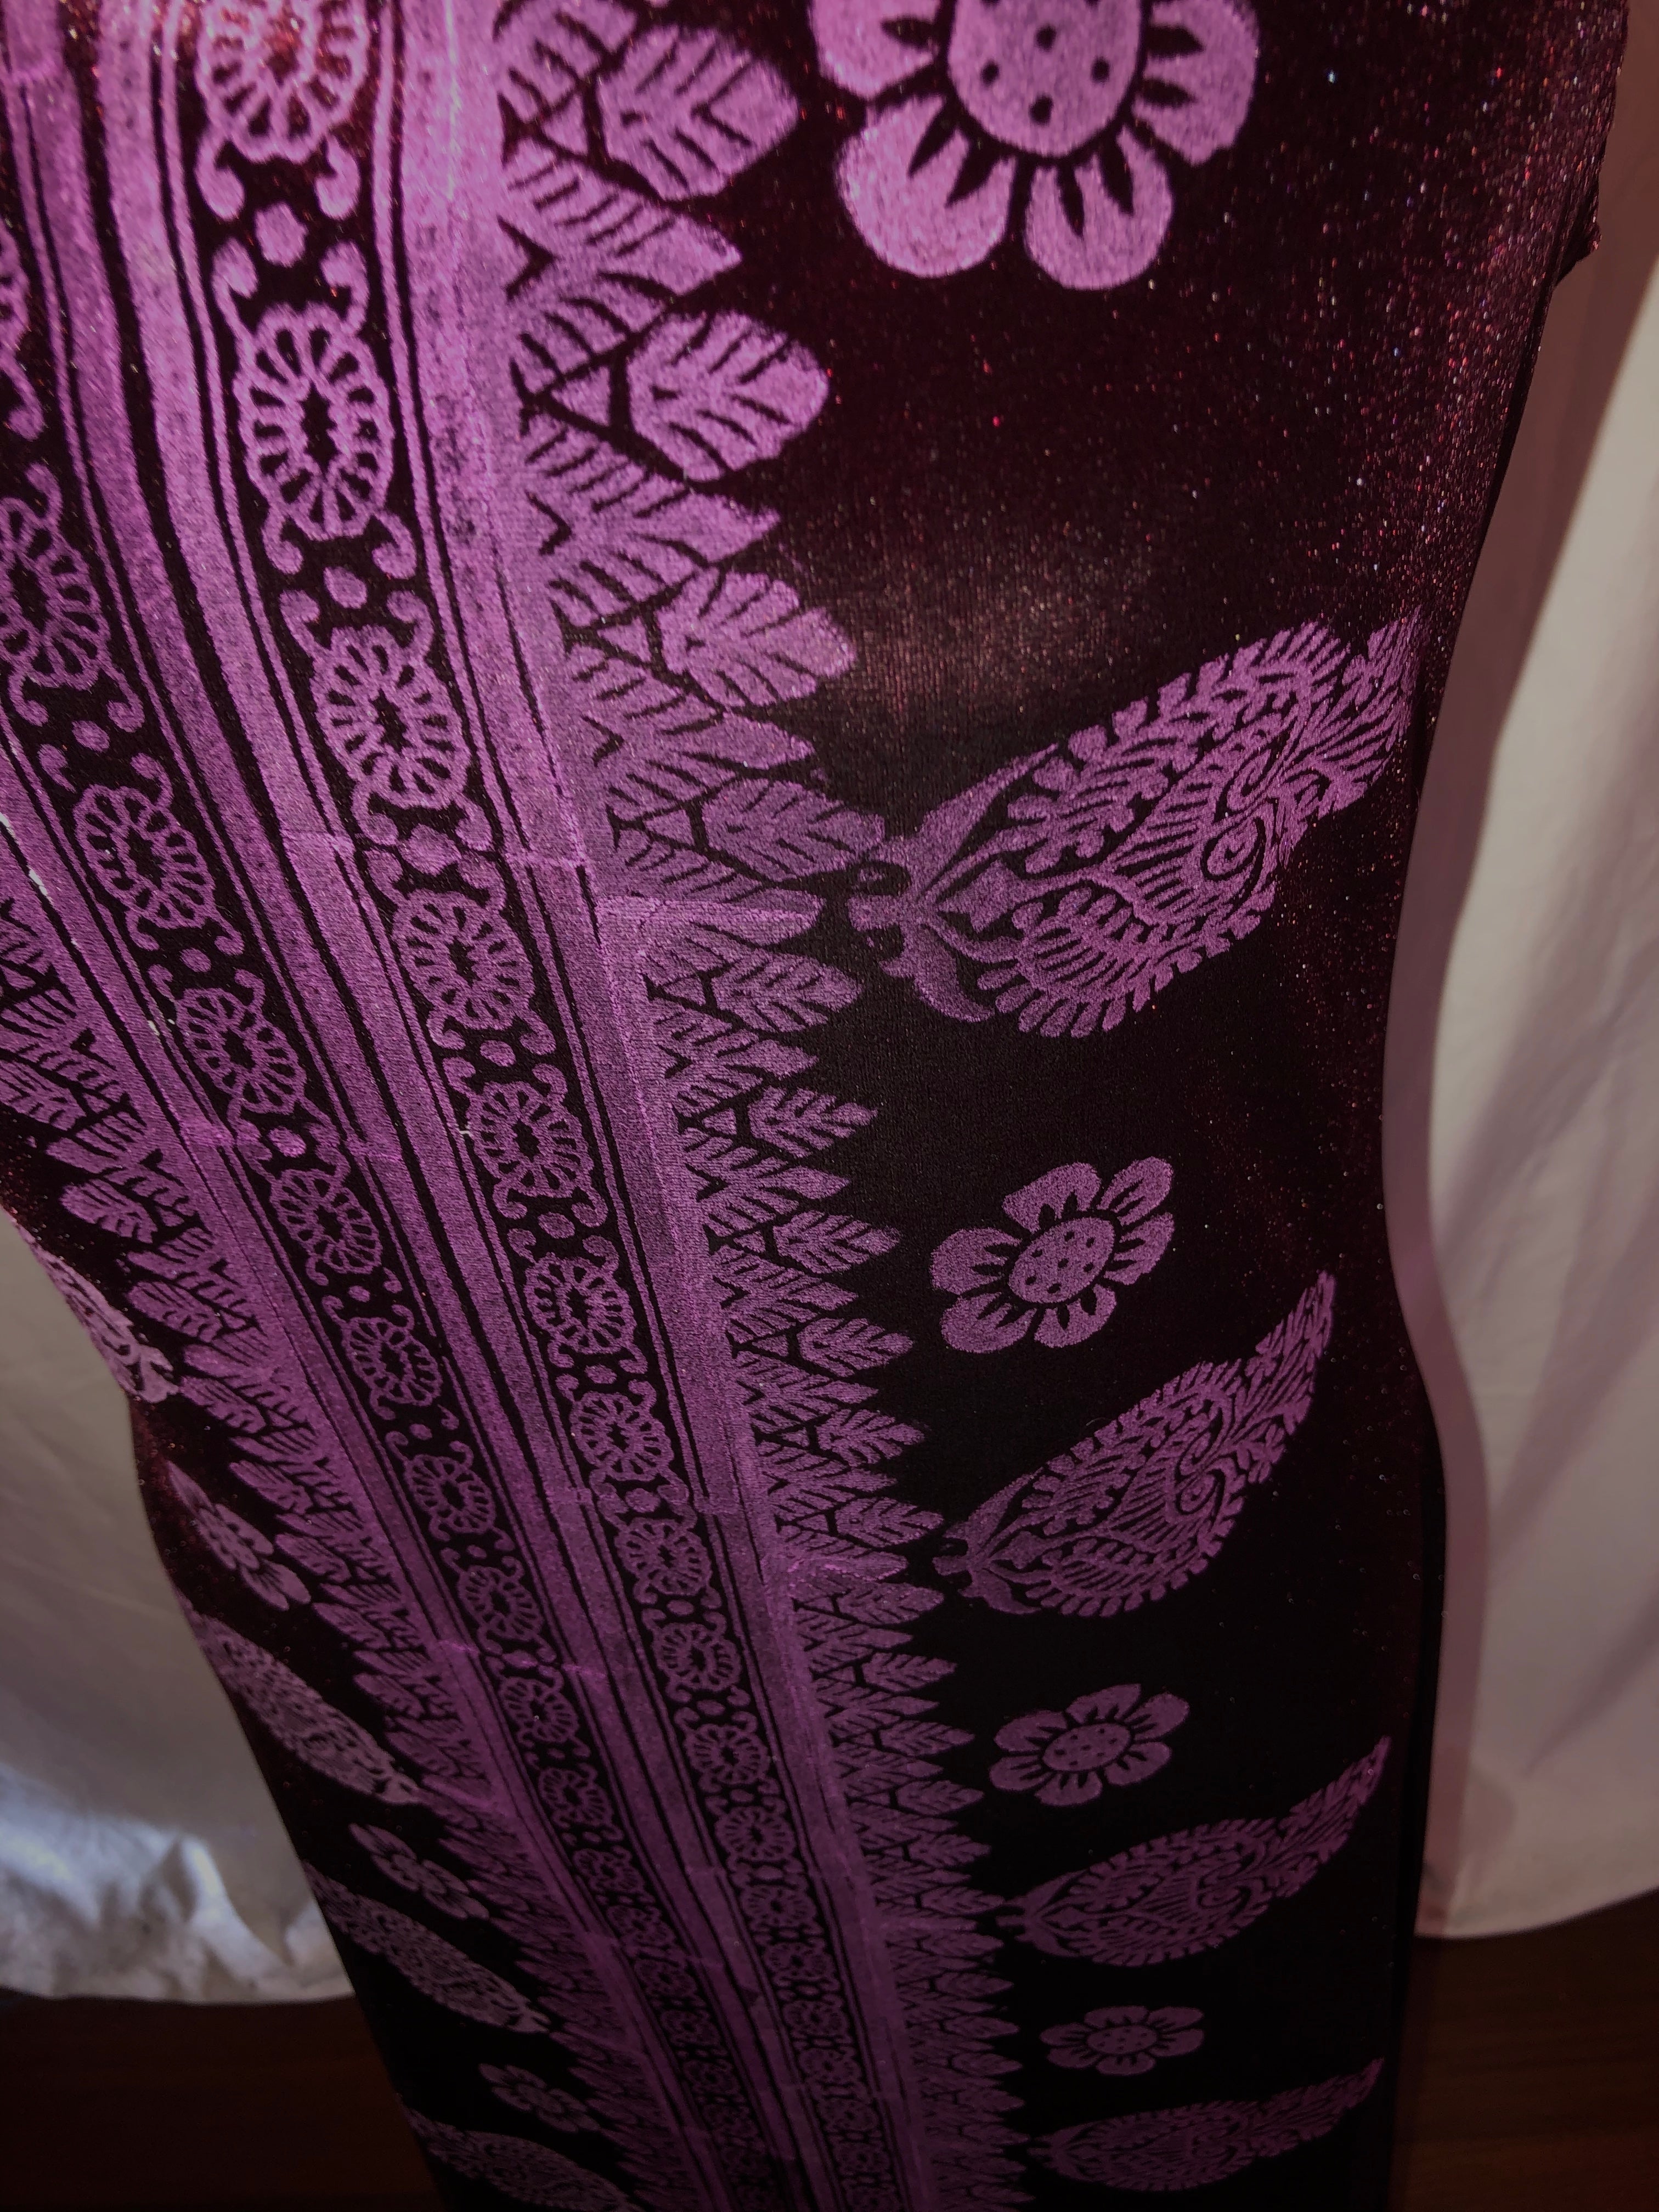 Long Burgundy Stretch Velvet Dress